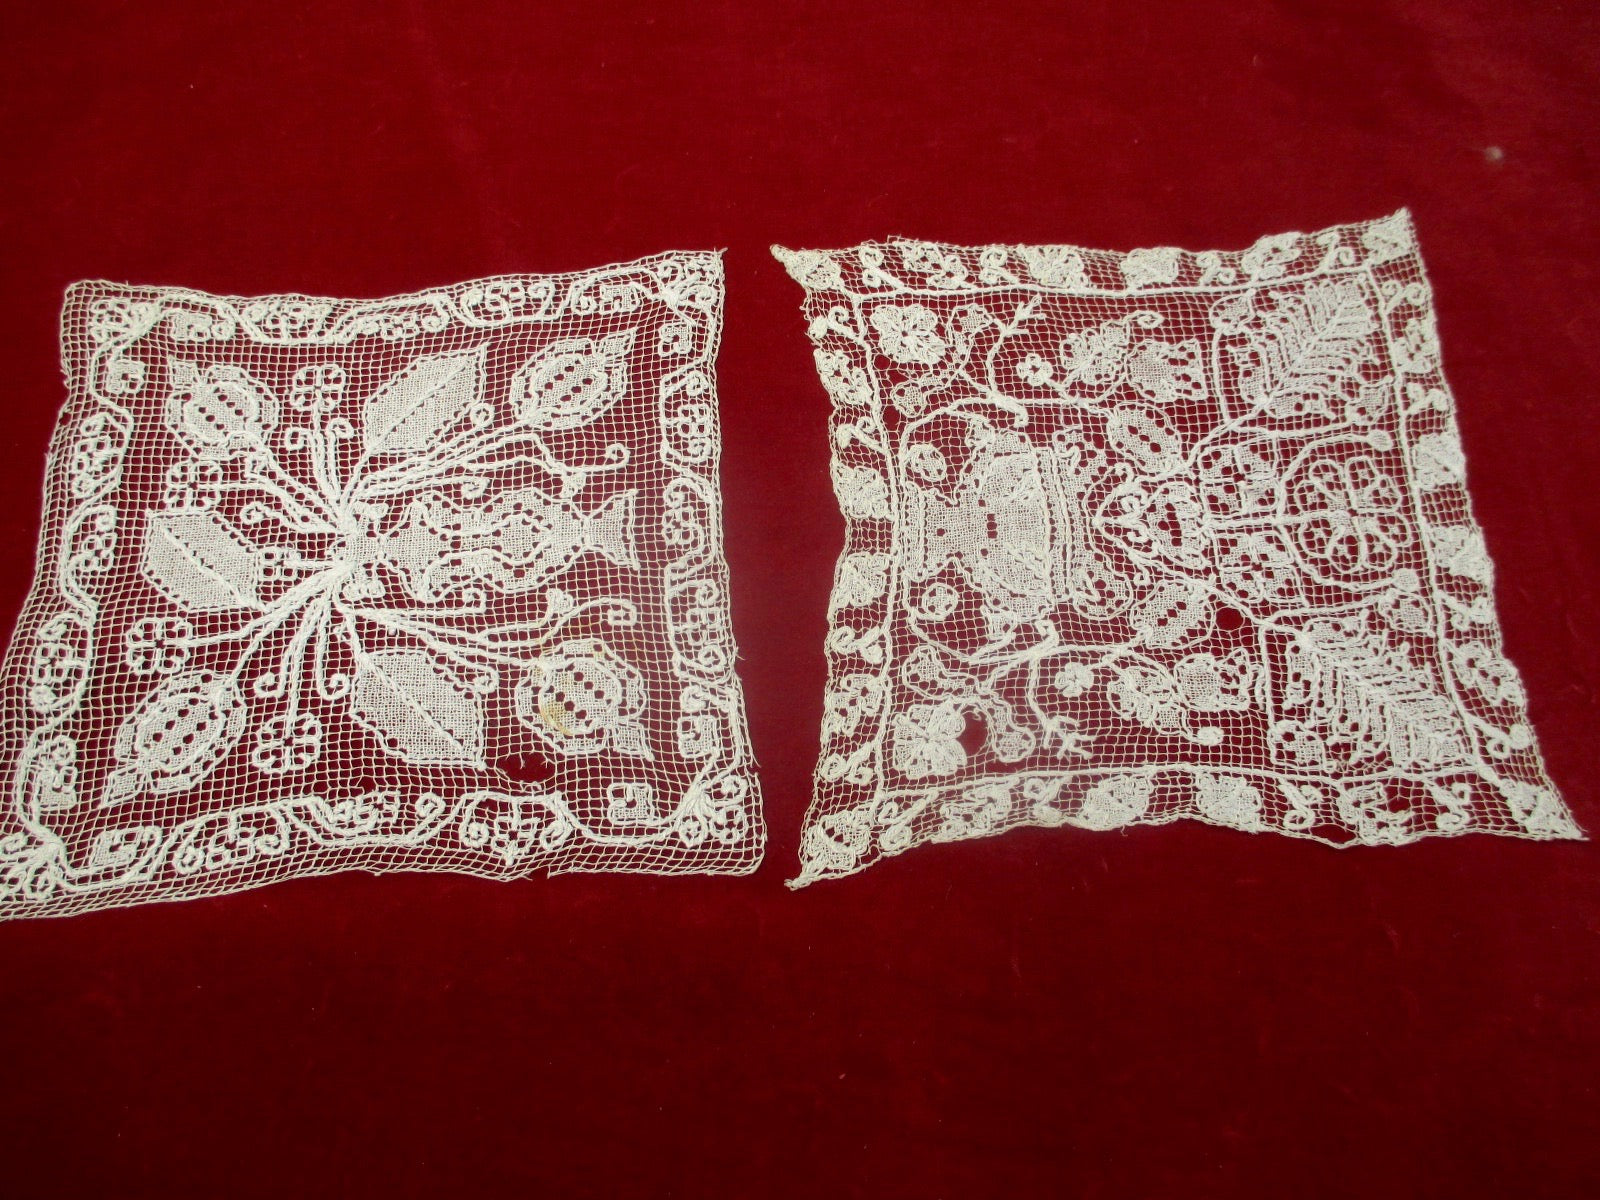 Antique Victorian set of lace doilies 2 pieces